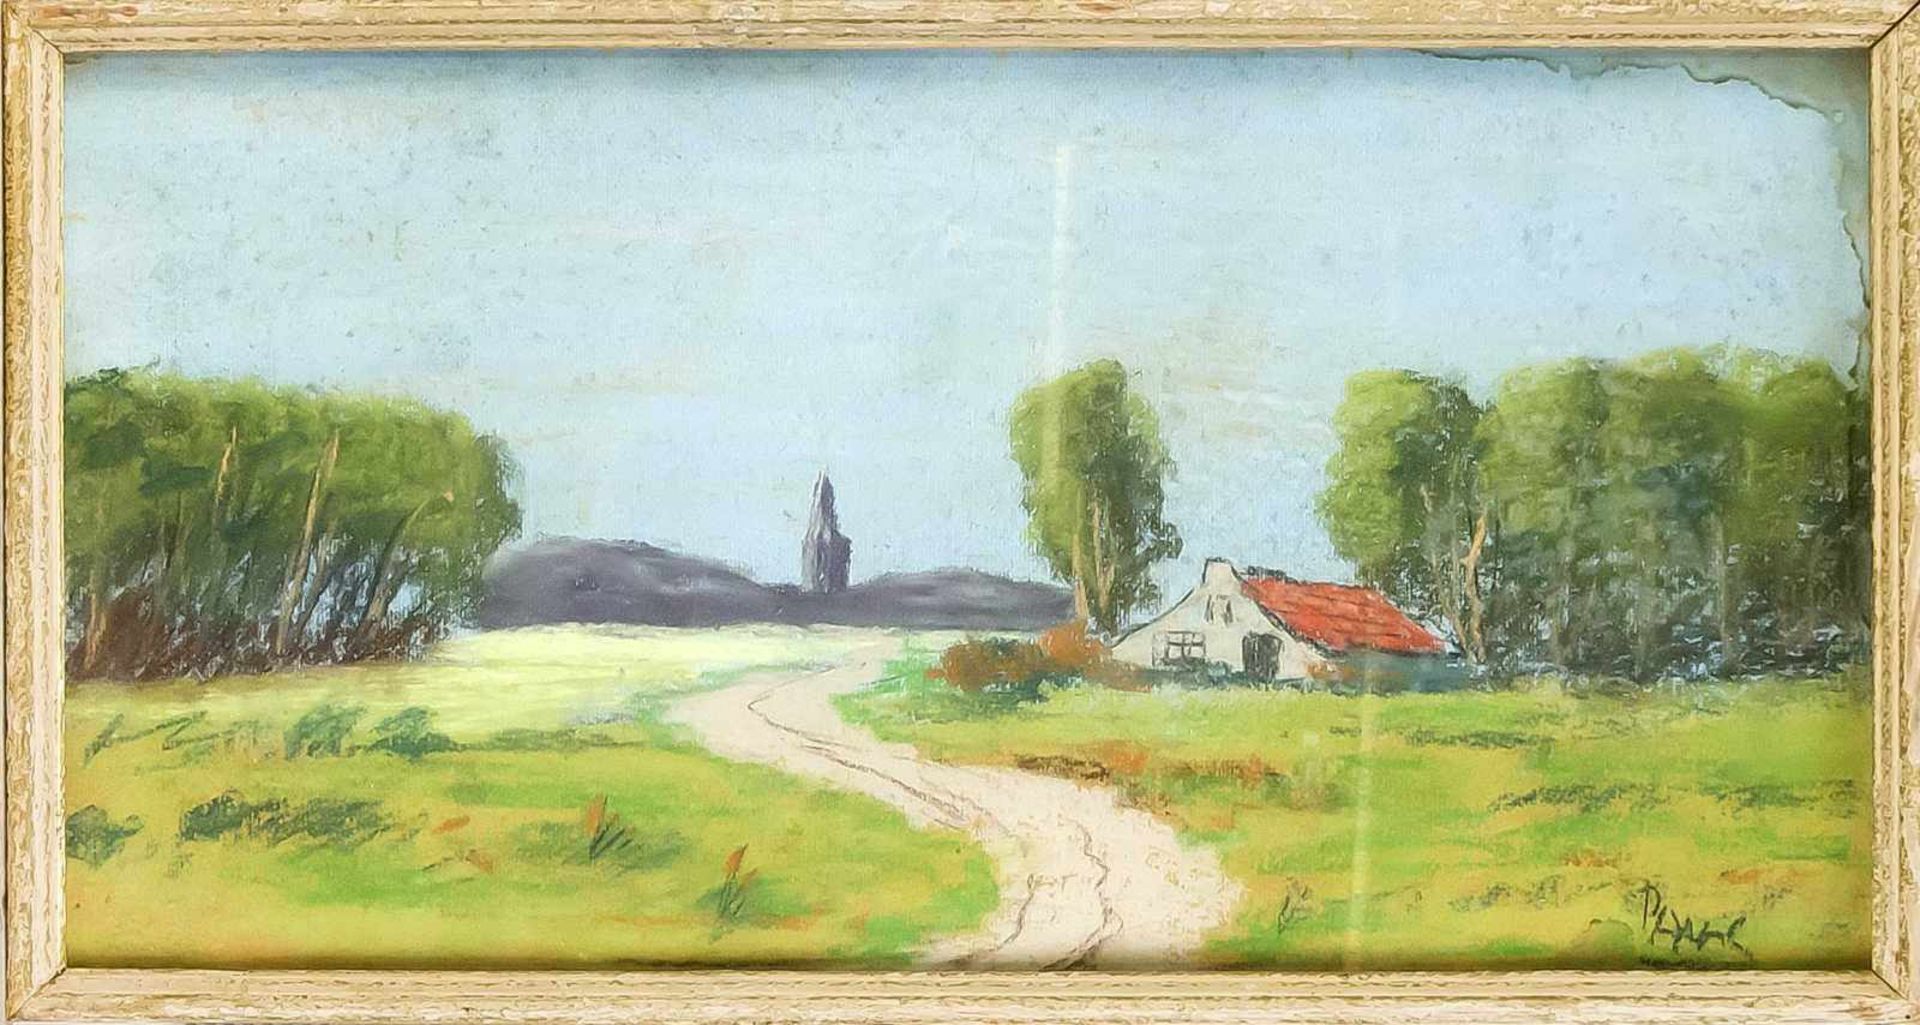 Edouard Henri Avril (1849-1928), franz. Maler und Grafiker, sommerliche Landschaft mitLandhaus und